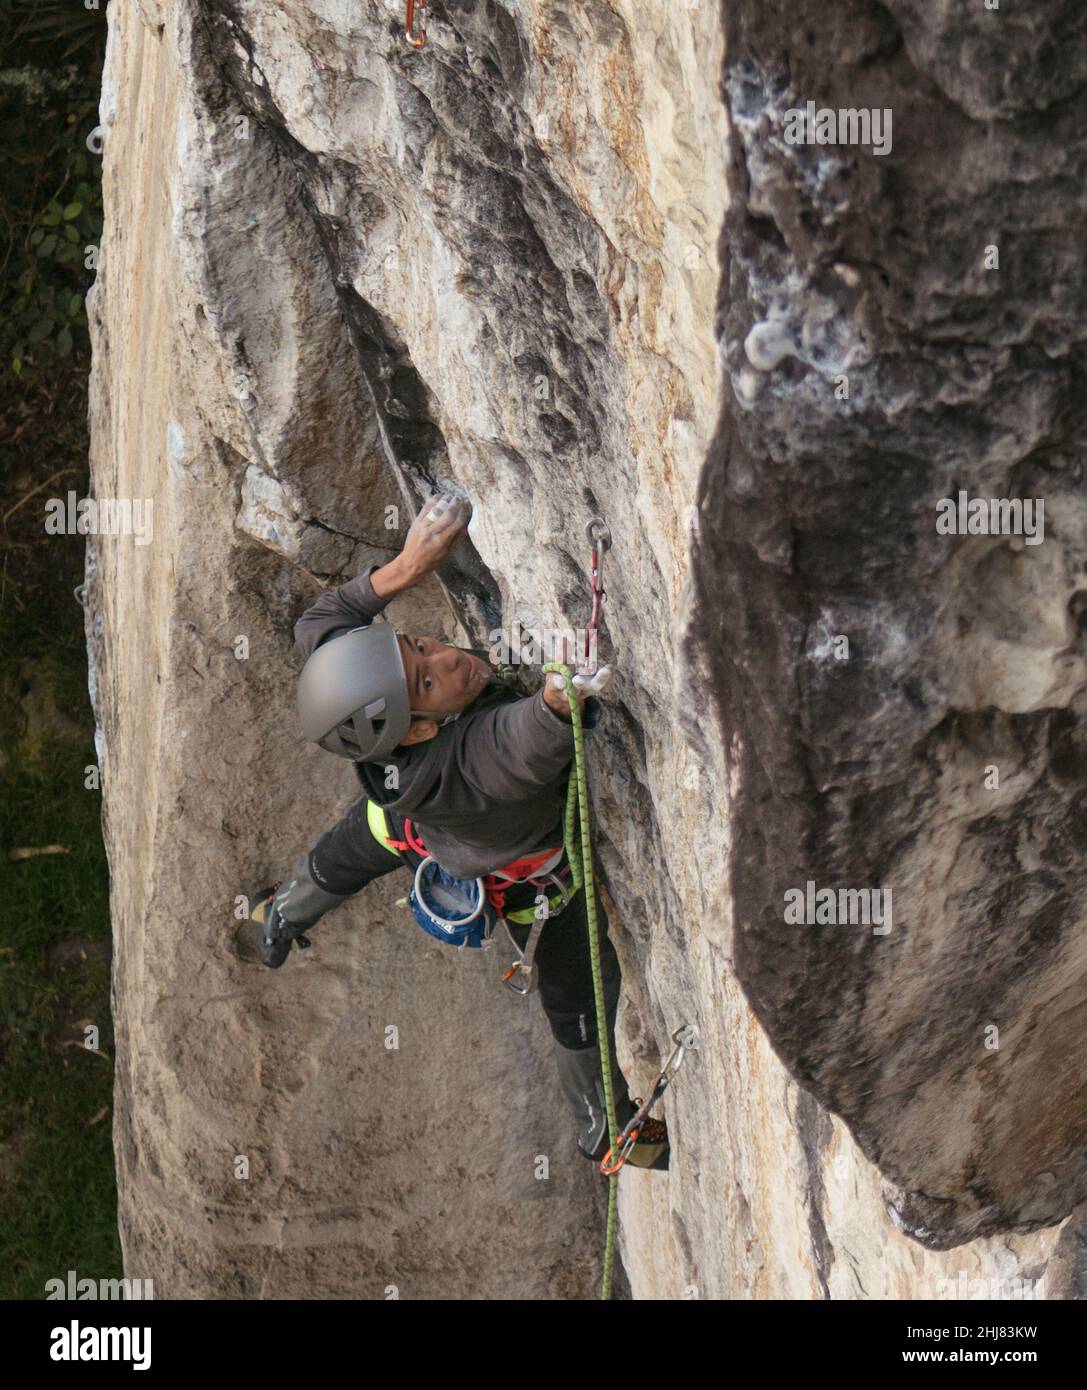 Prise de vue franche d'un grimpeur de roche mâle à la peau foncée en forme d'essai difficile Banque D'Images